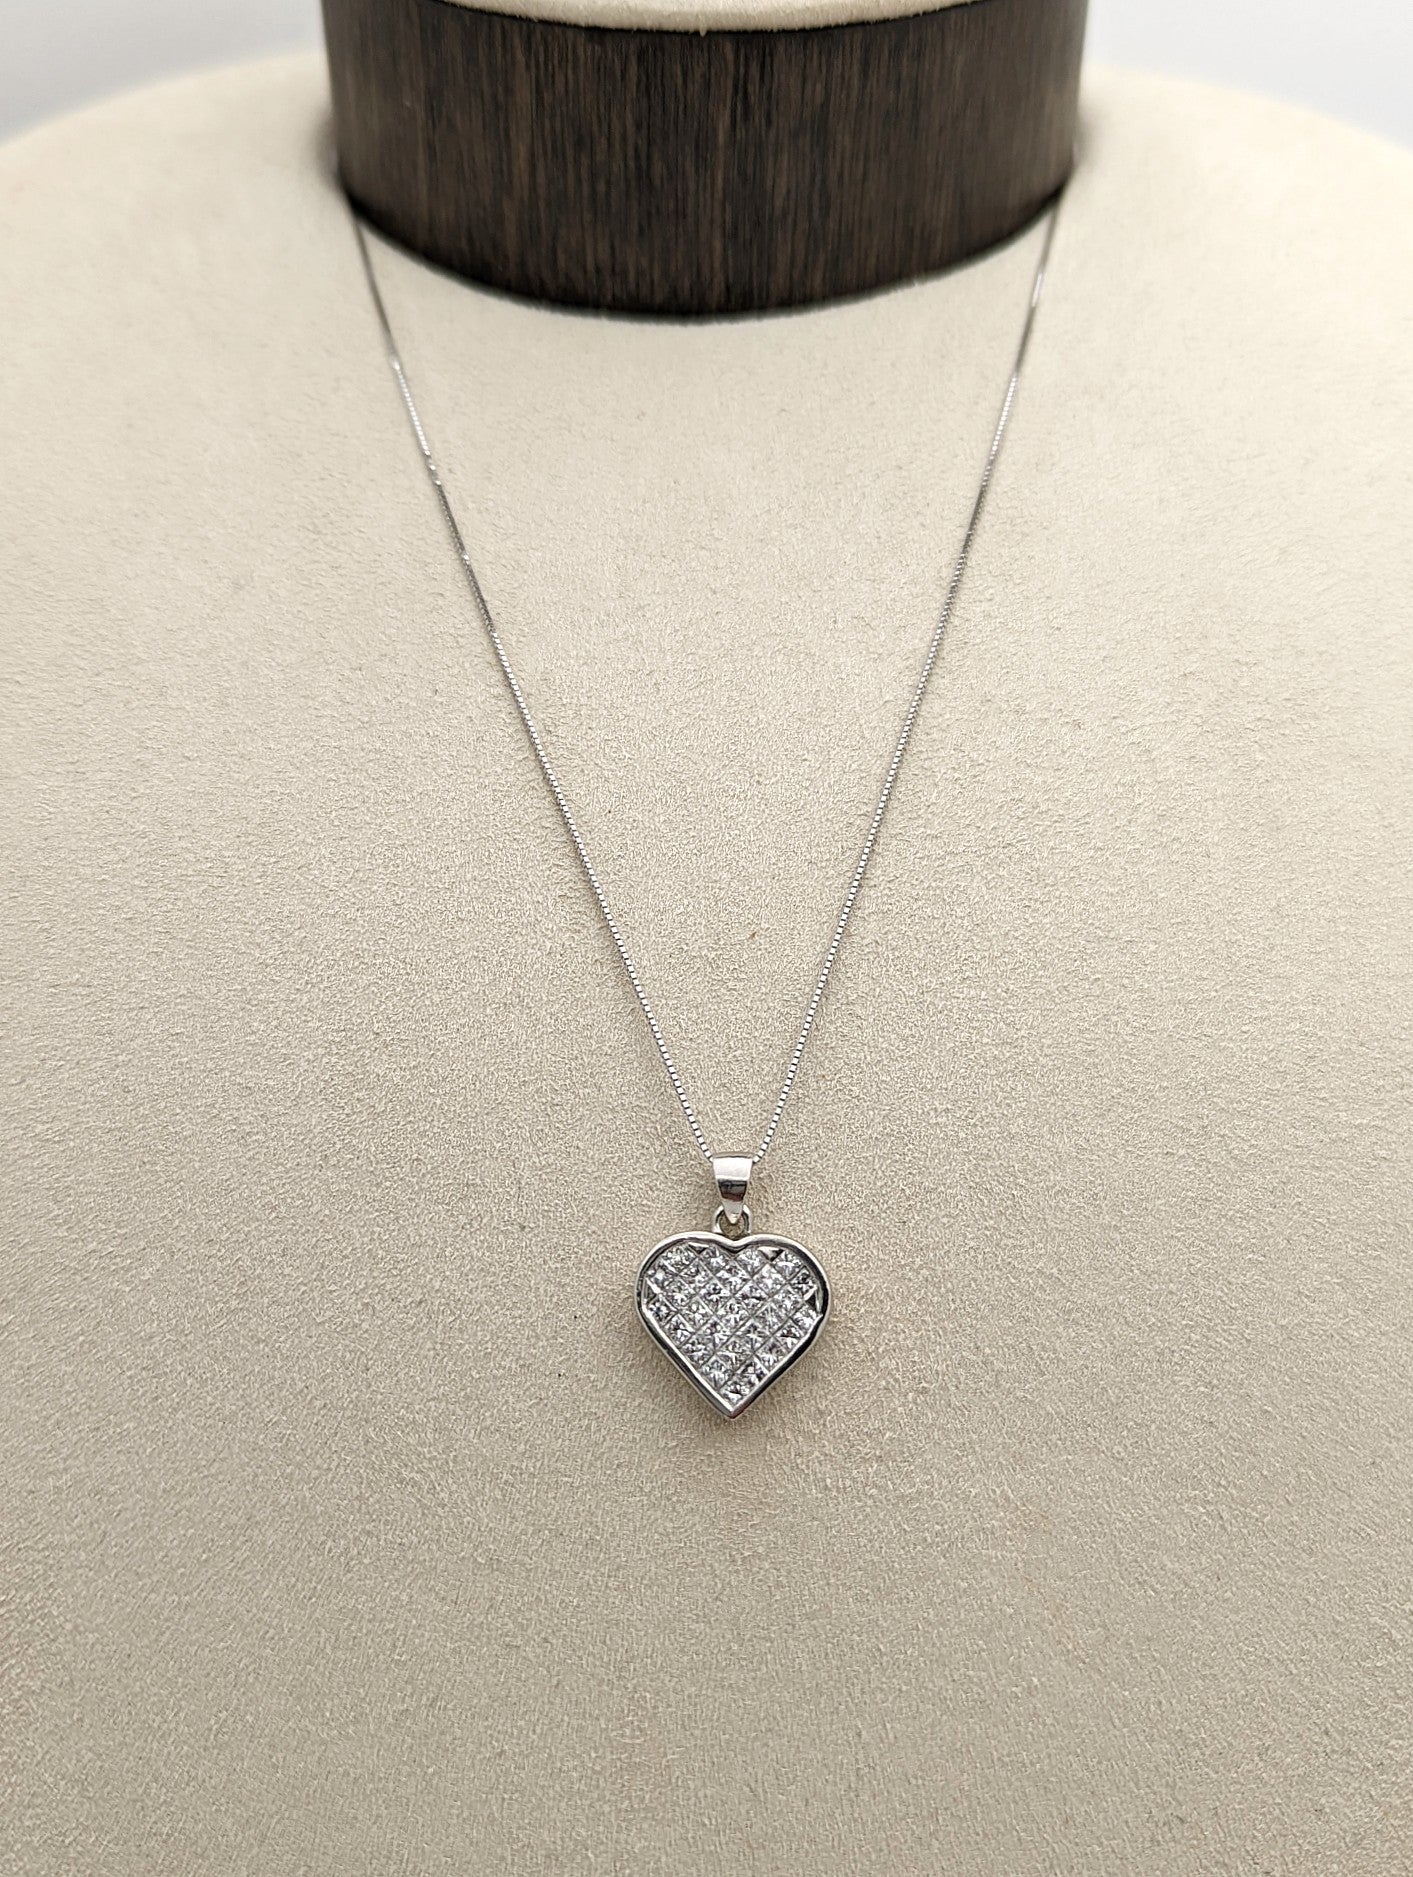 Diamond Heart Pendant in Platinum